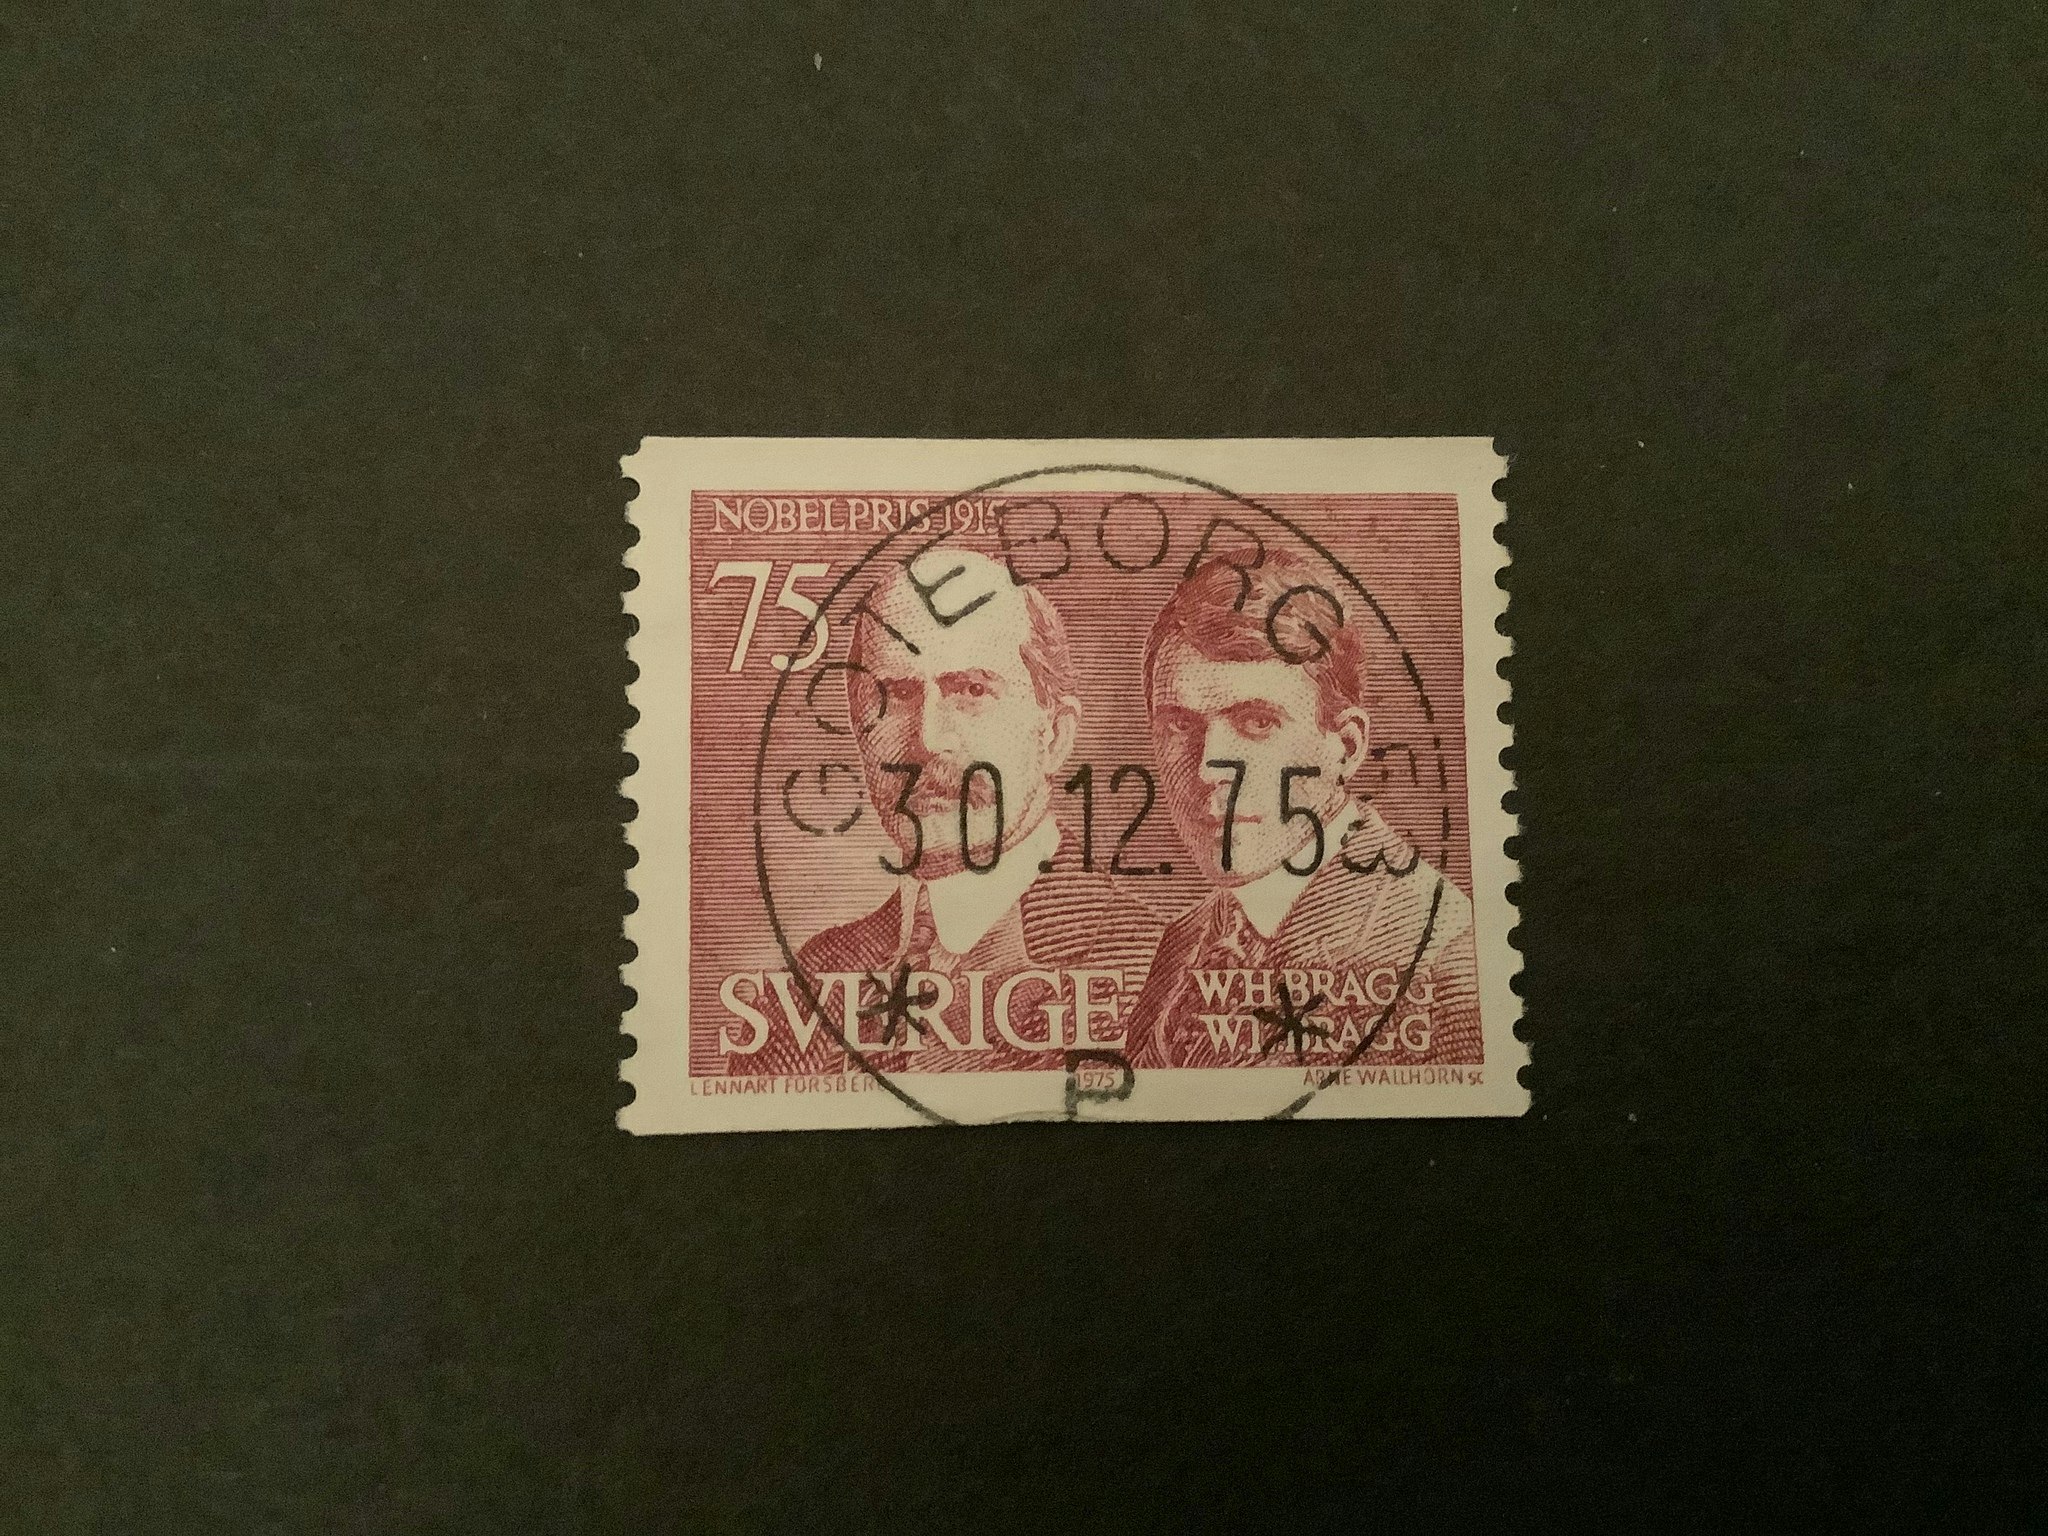 NOBELPRIS 1915 facit nr 949 LYXST GÖTEBORG 53